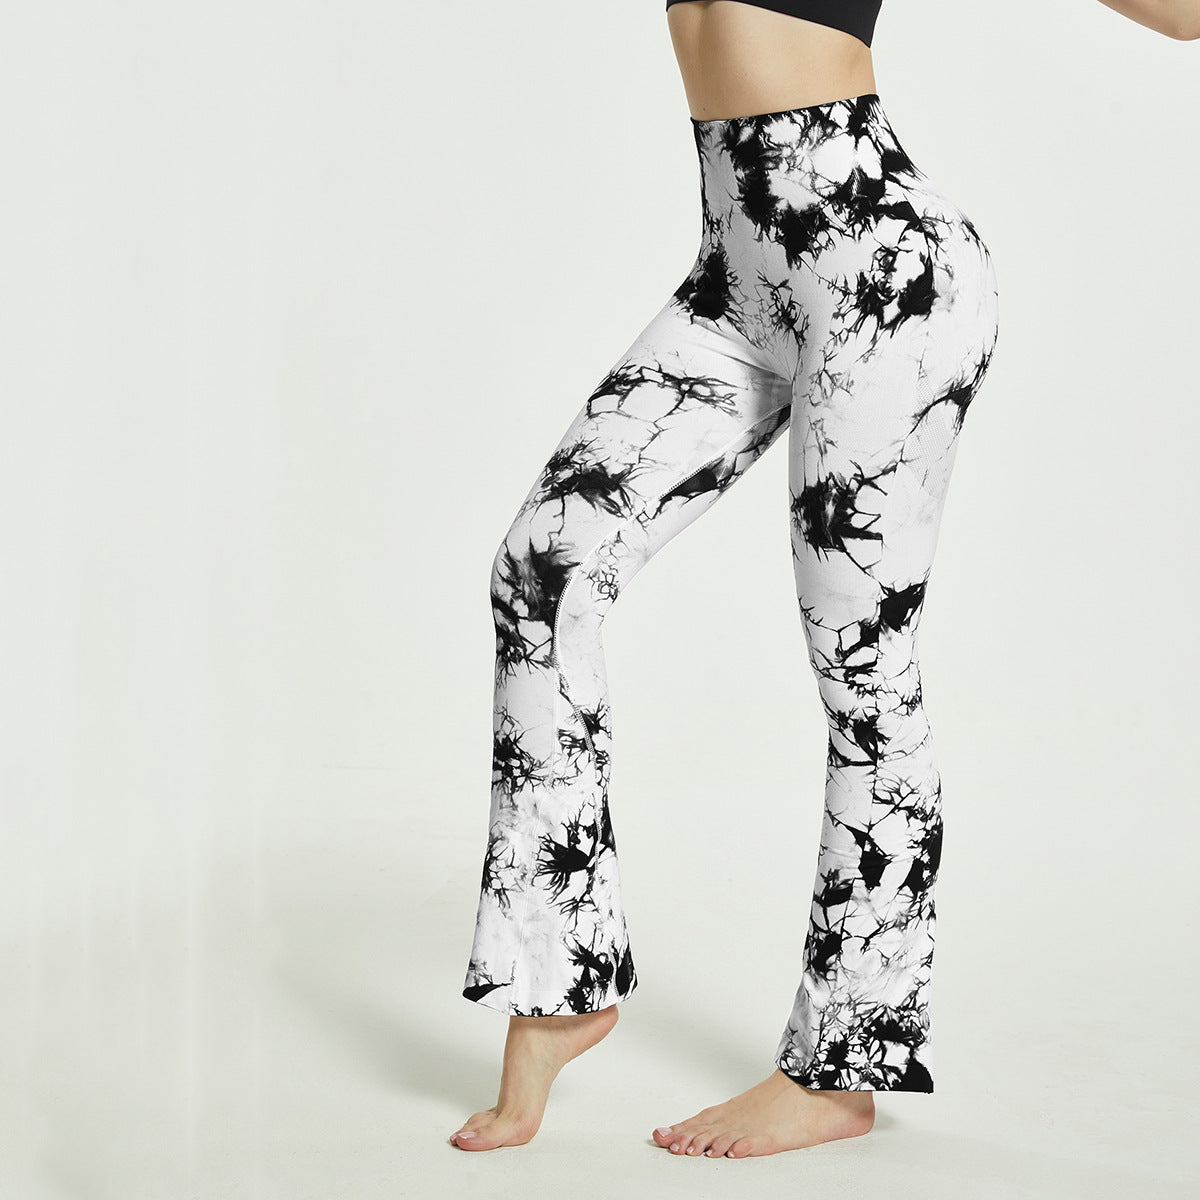 Yoga Bell-Bottomed Pants Seamless High Waist Quick-drying Sports Women Flares Leggings - White - Leggings - Carvan Mart